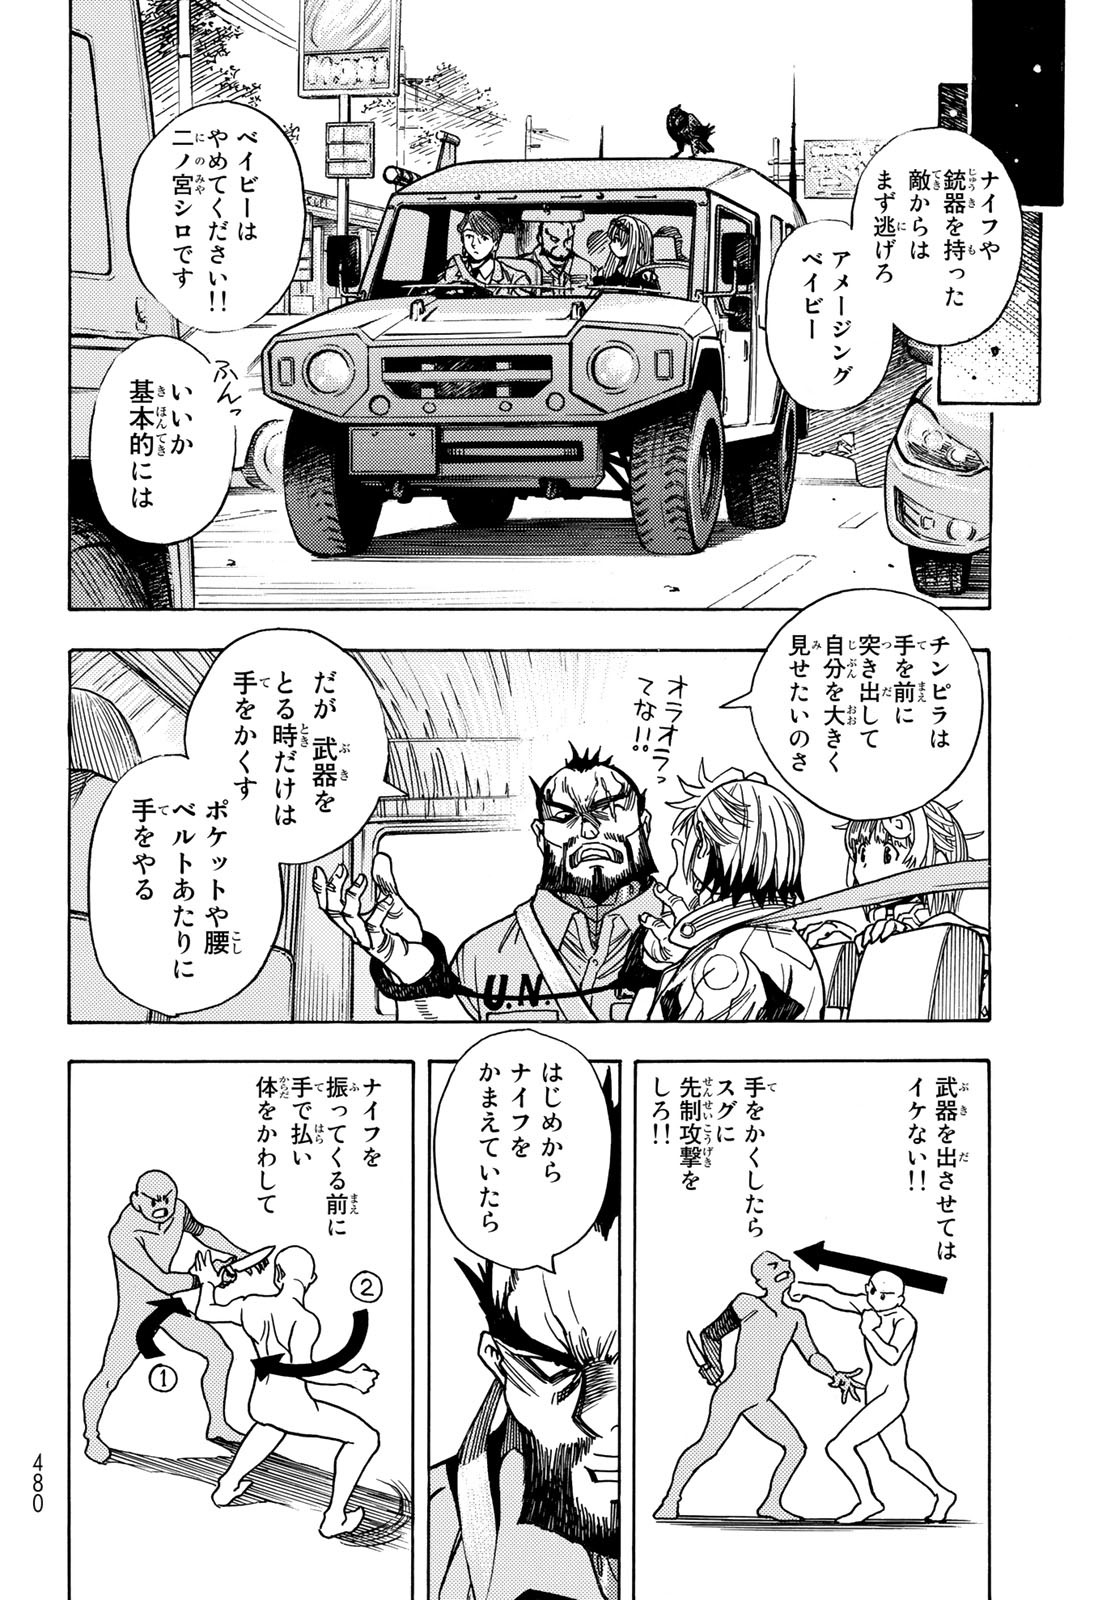 Mugou no Schnell Gear: Chikyuugai Kisouka AI - Chapter 35 - Page 12